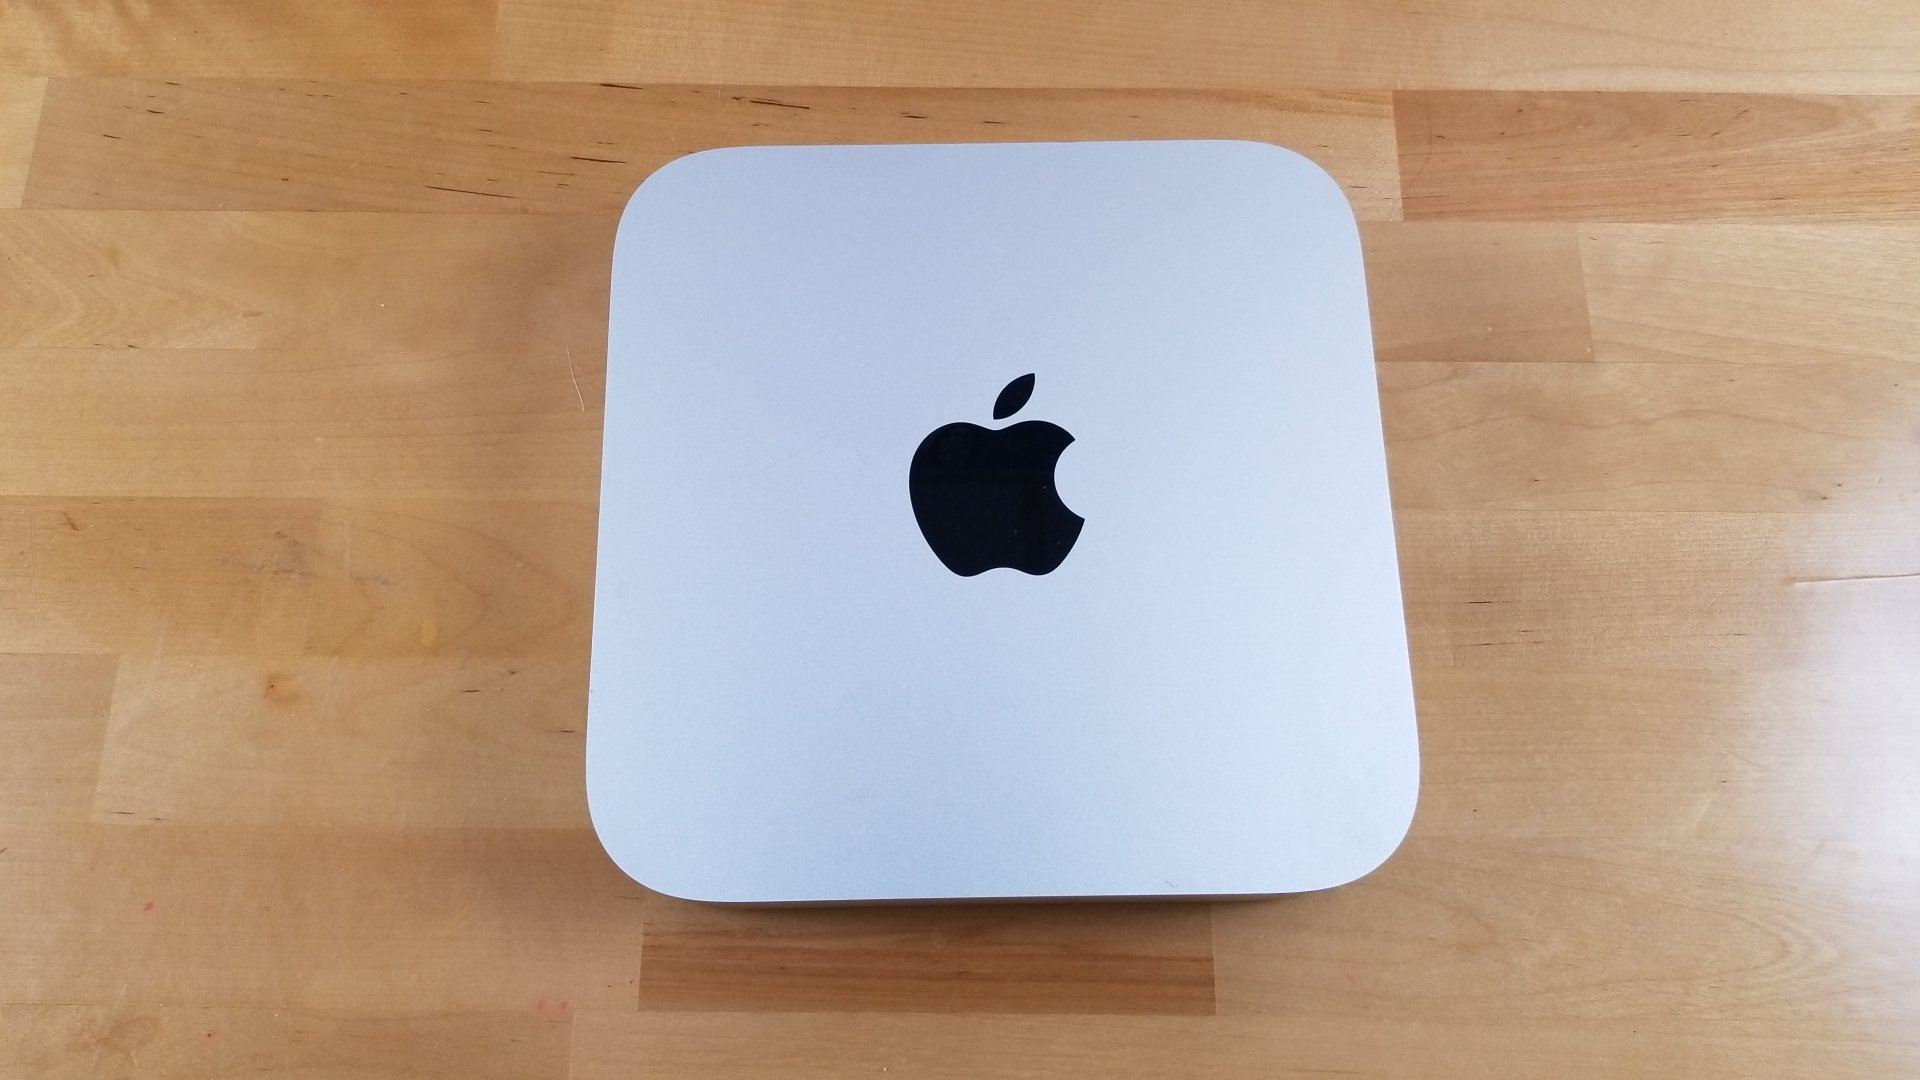 Apple Mac Mini (Late 2014) 2.6GHz Intel Core i5, 1TB HDD, 8GB